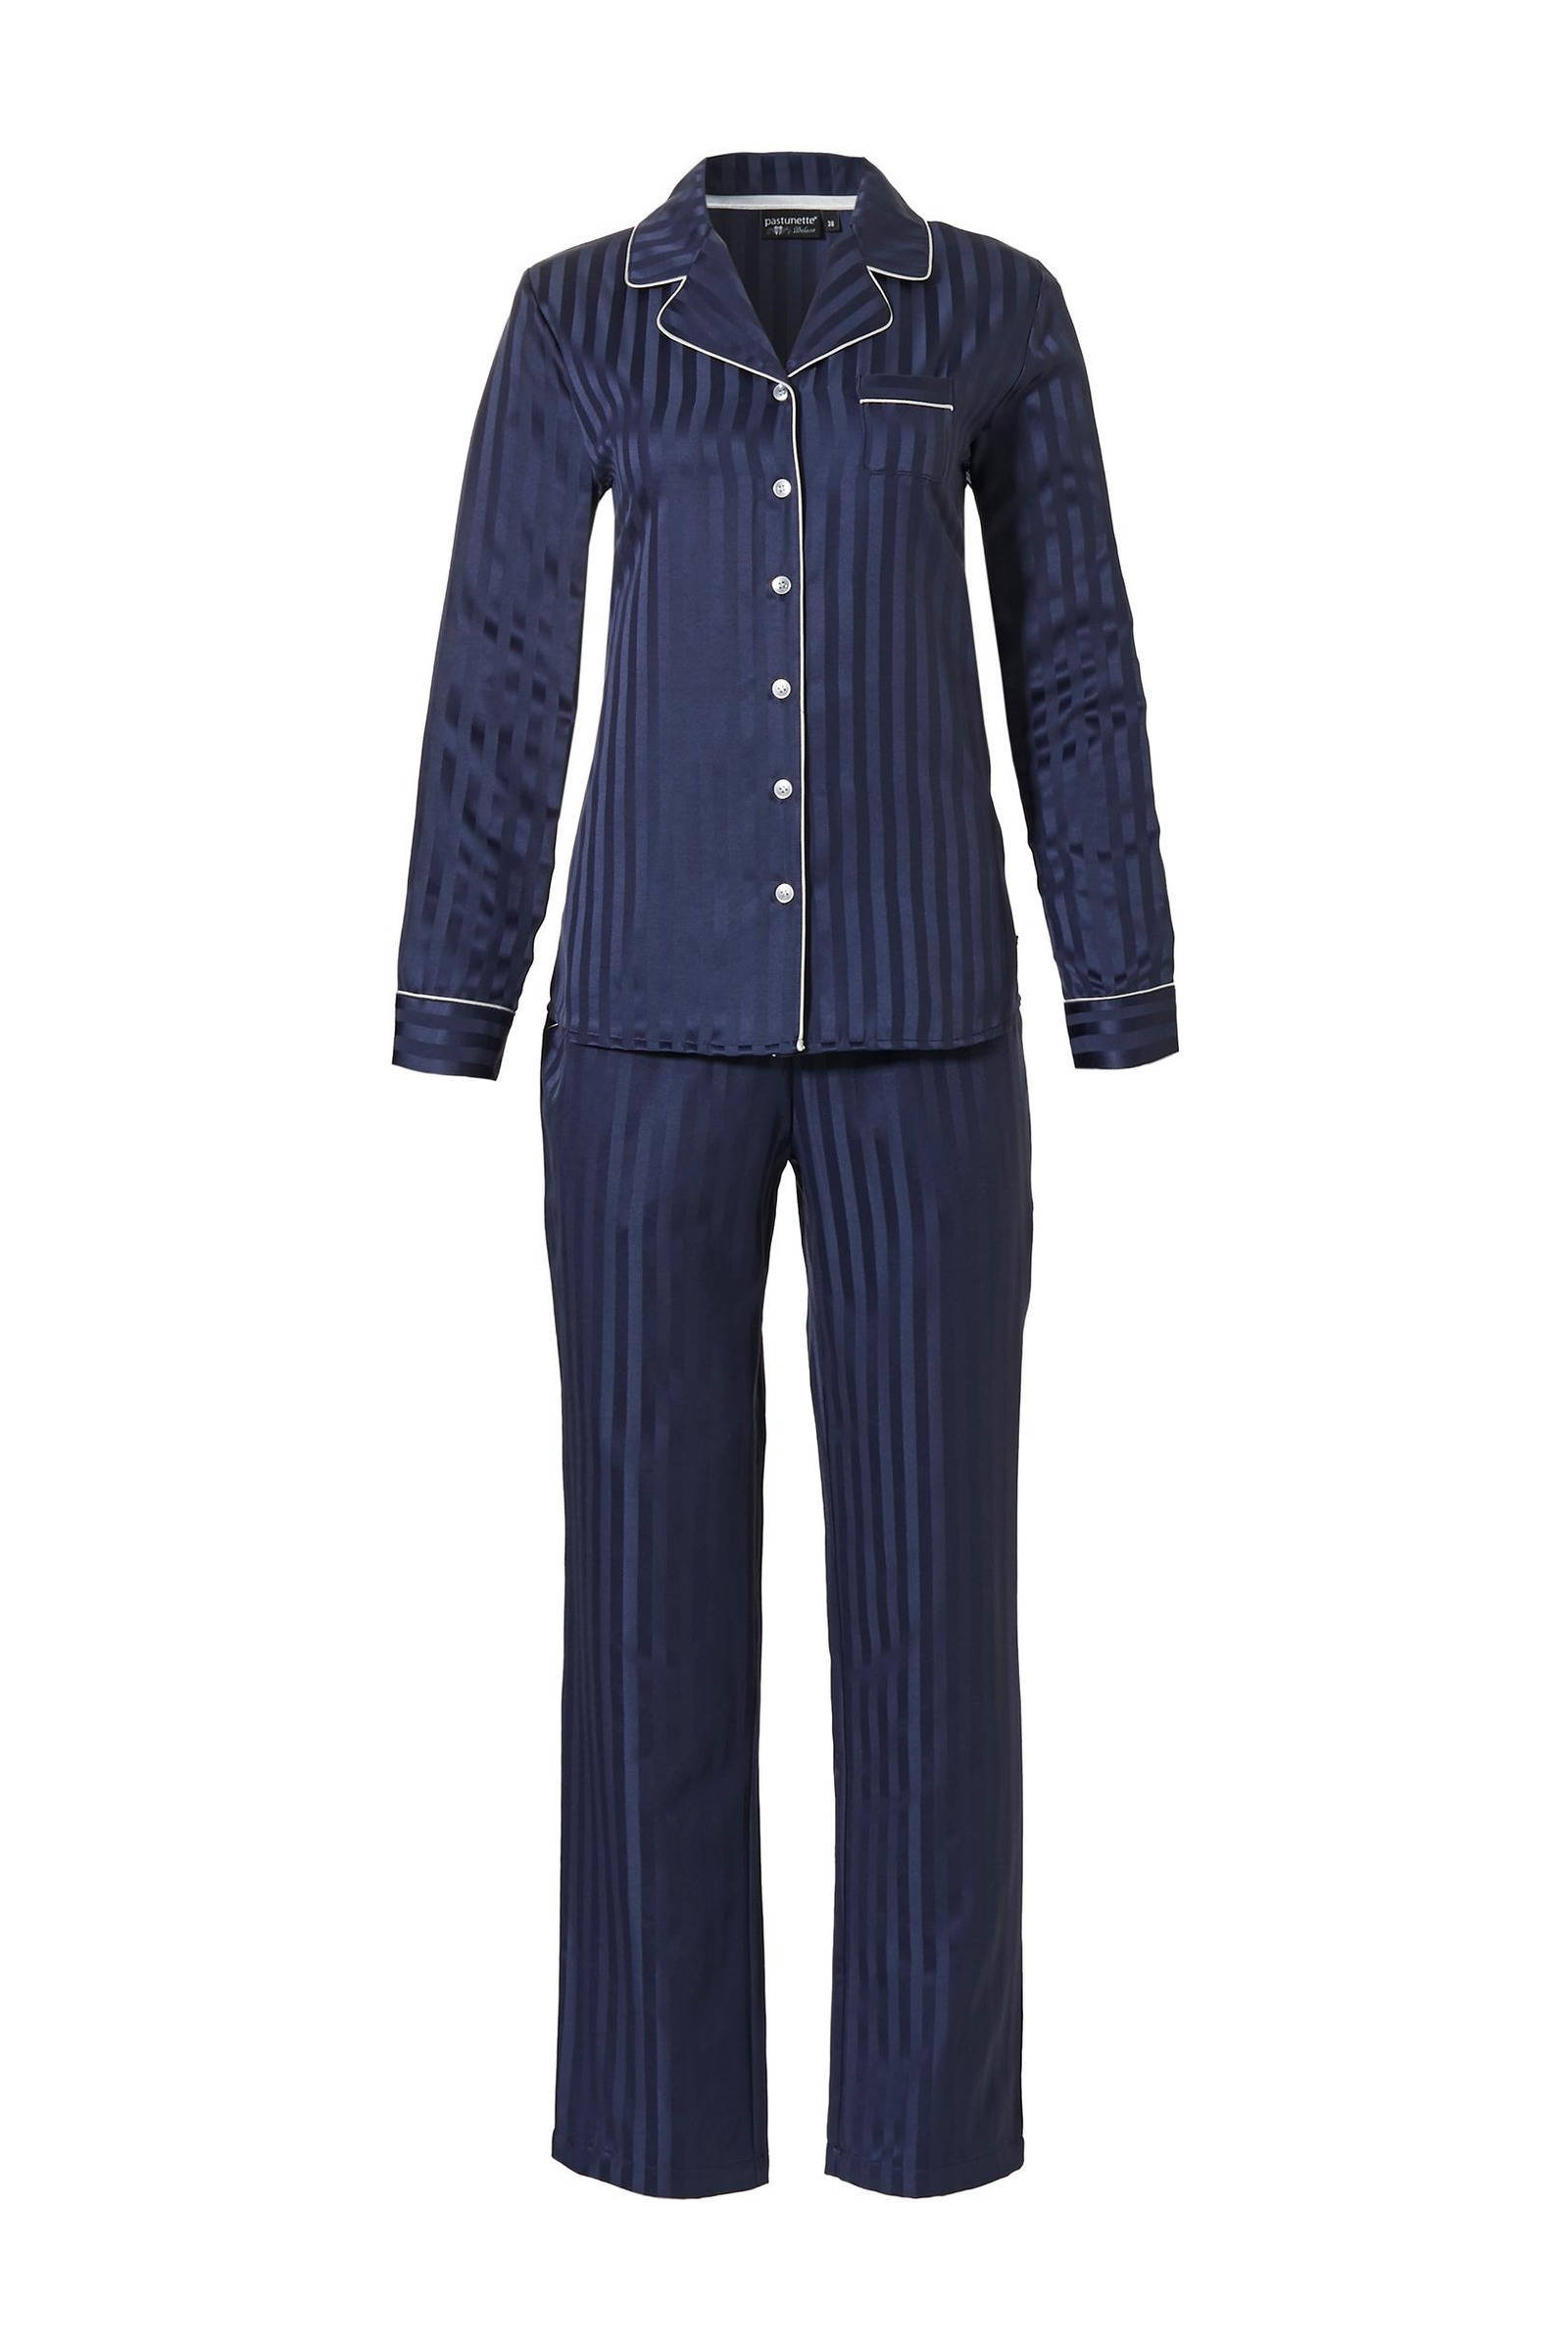 Pastunette Dames pyjama satijn De Luxe 25212 310 6 blauw Blauw 38 online kopen